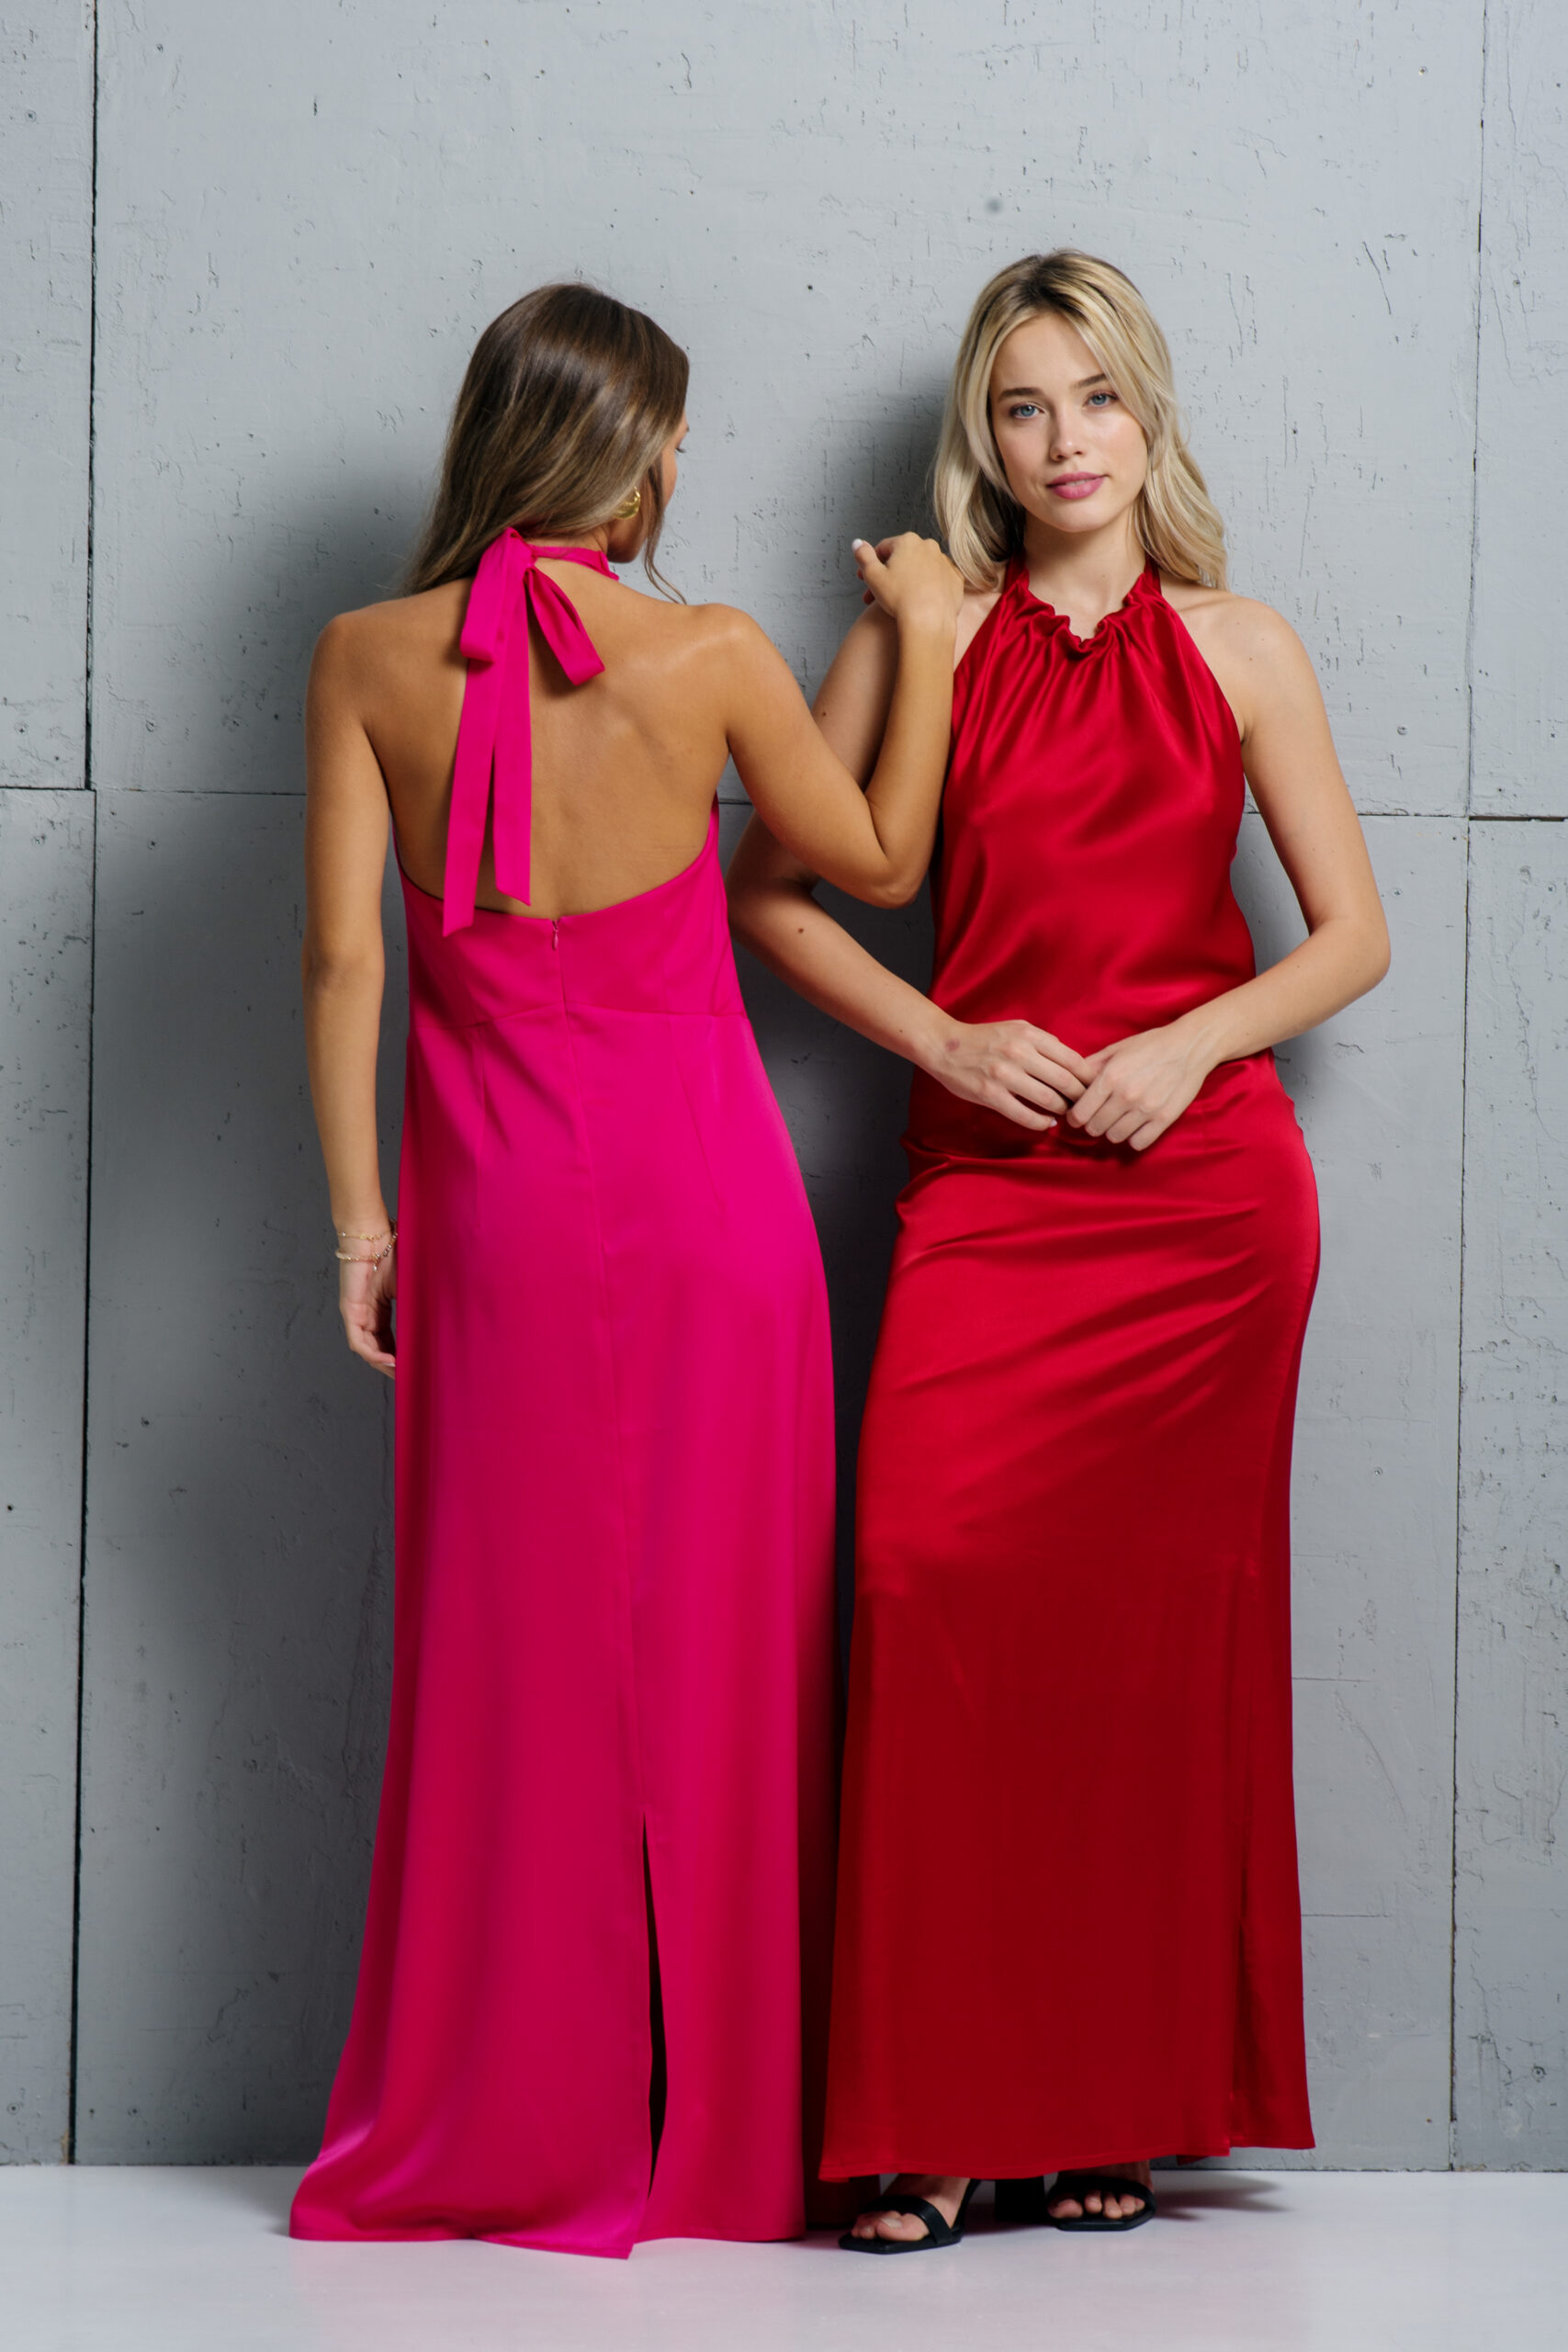 Dve devojke nose isti model haljine u crvenoj i pink boji.